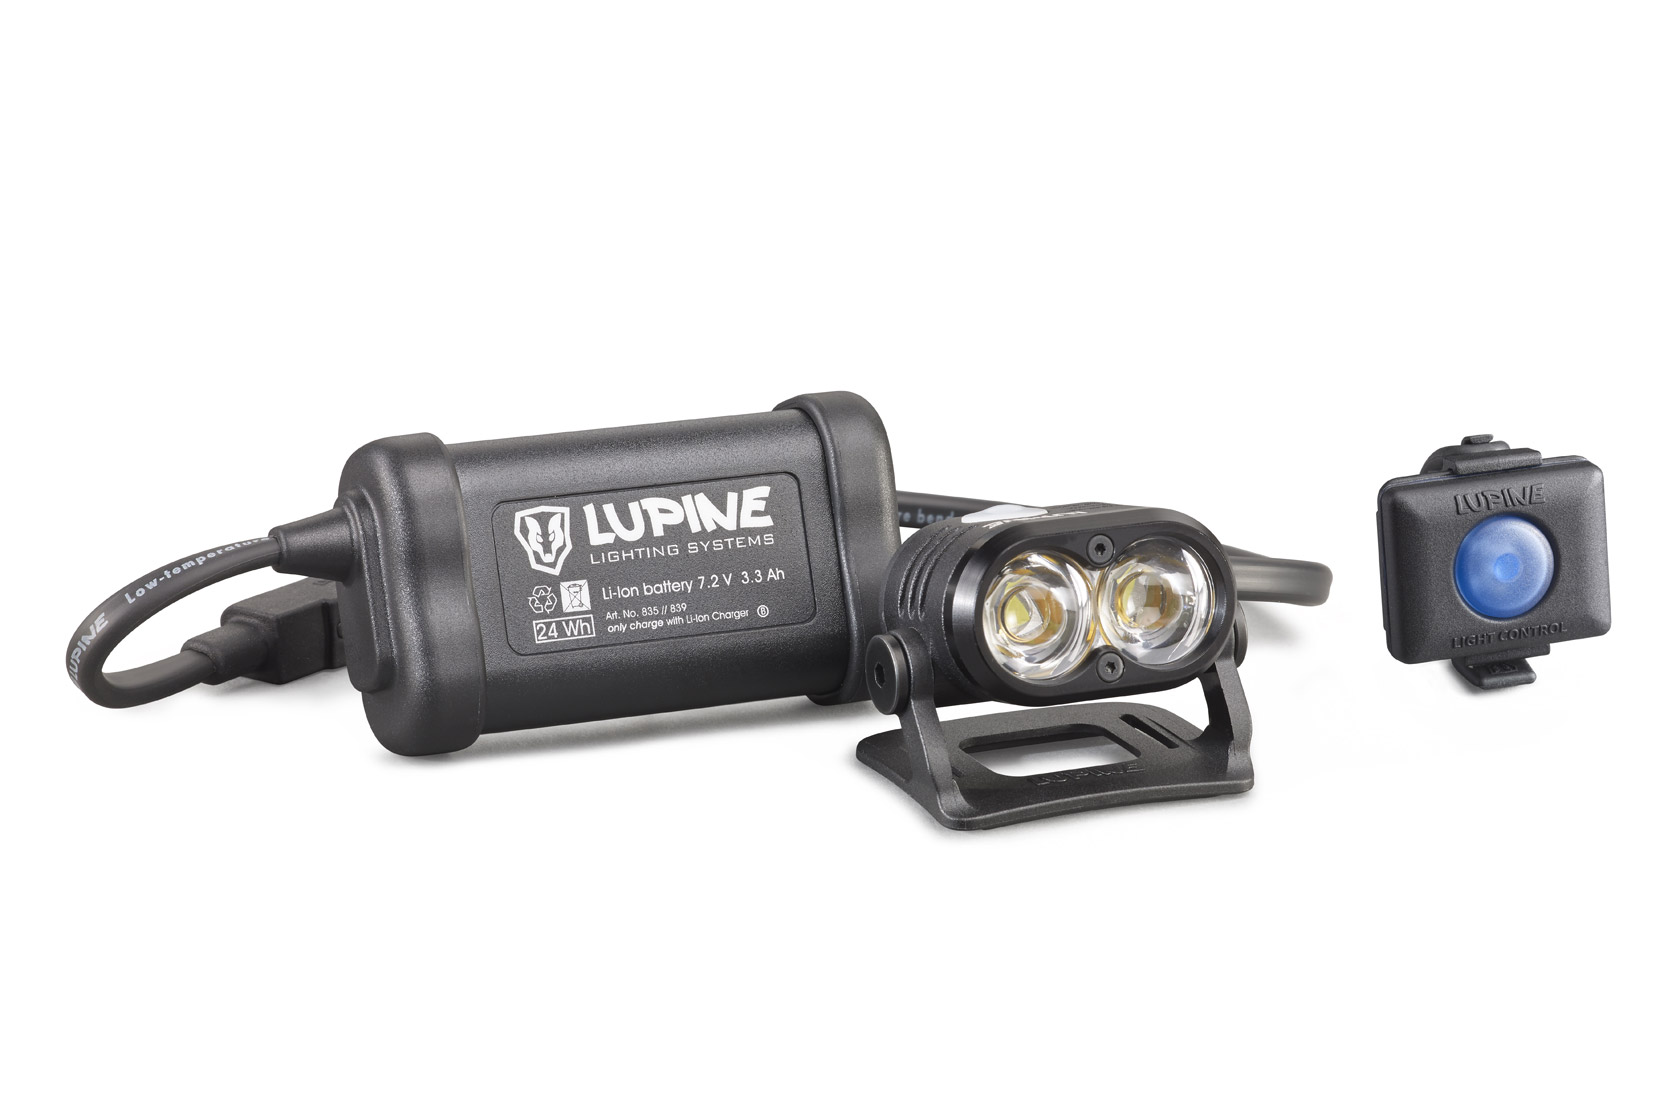 Die Lupine Piko R4 ist mit knapp 200 g samt Akku die leichteste Lampe im Sortiment von Lupine.